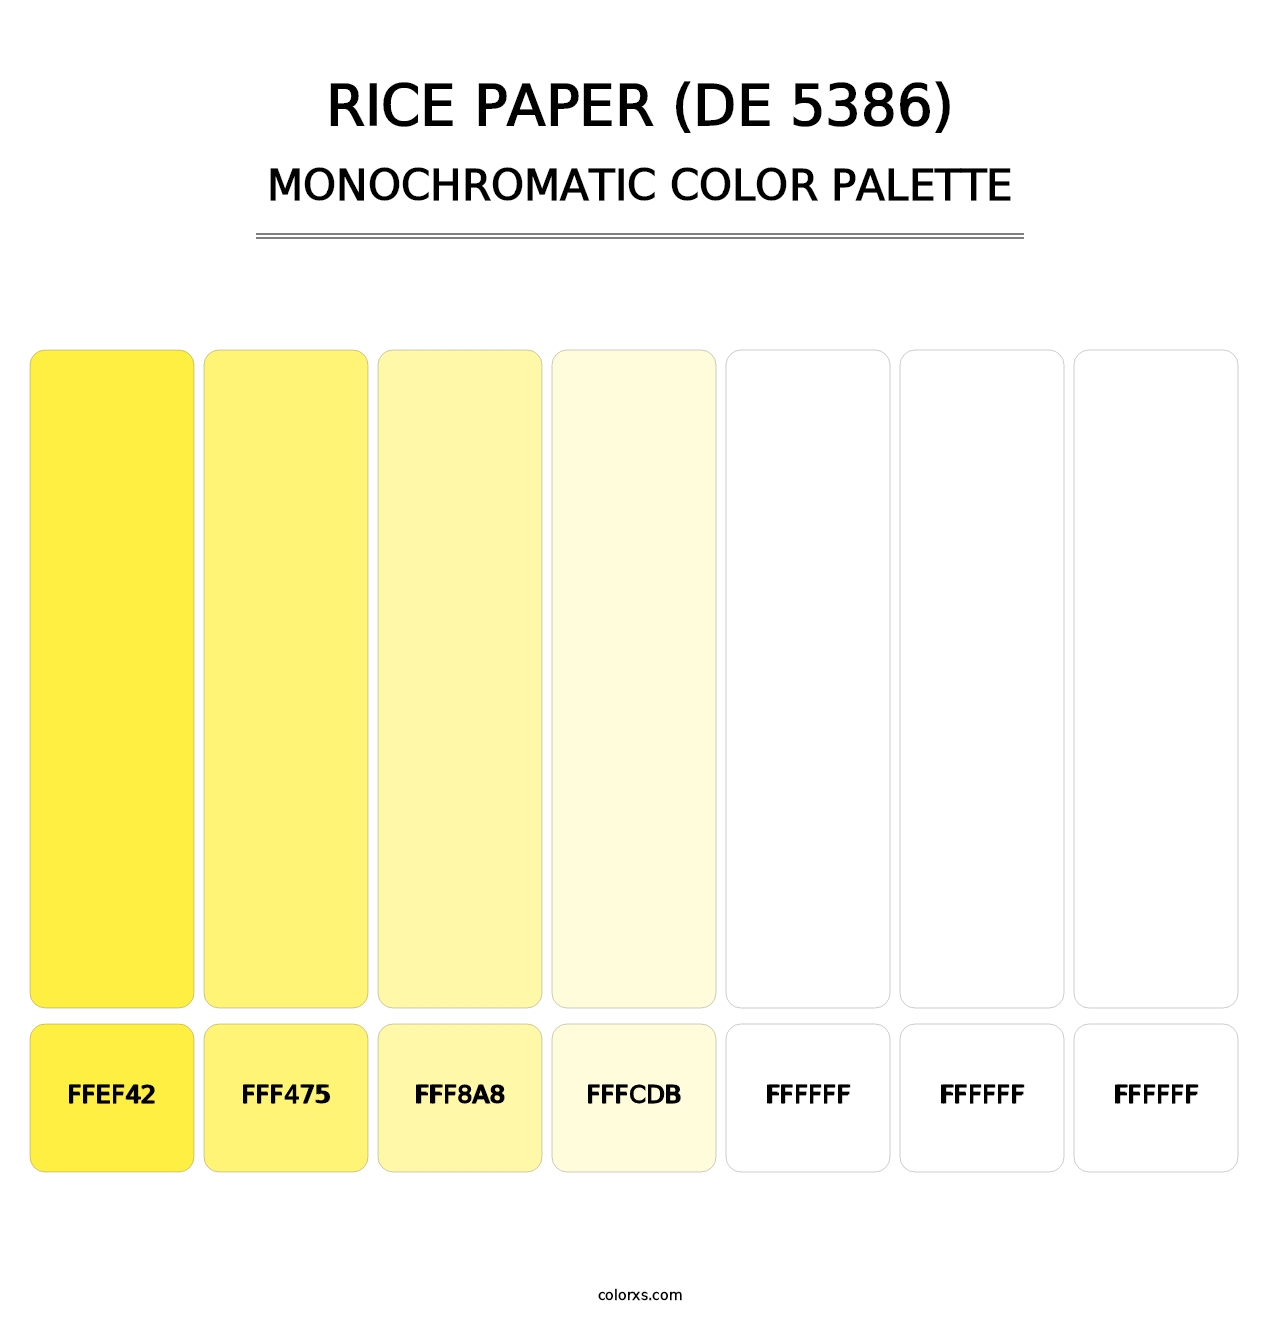 Rice Paper (DE 5386) - Monochromatic Color Palette